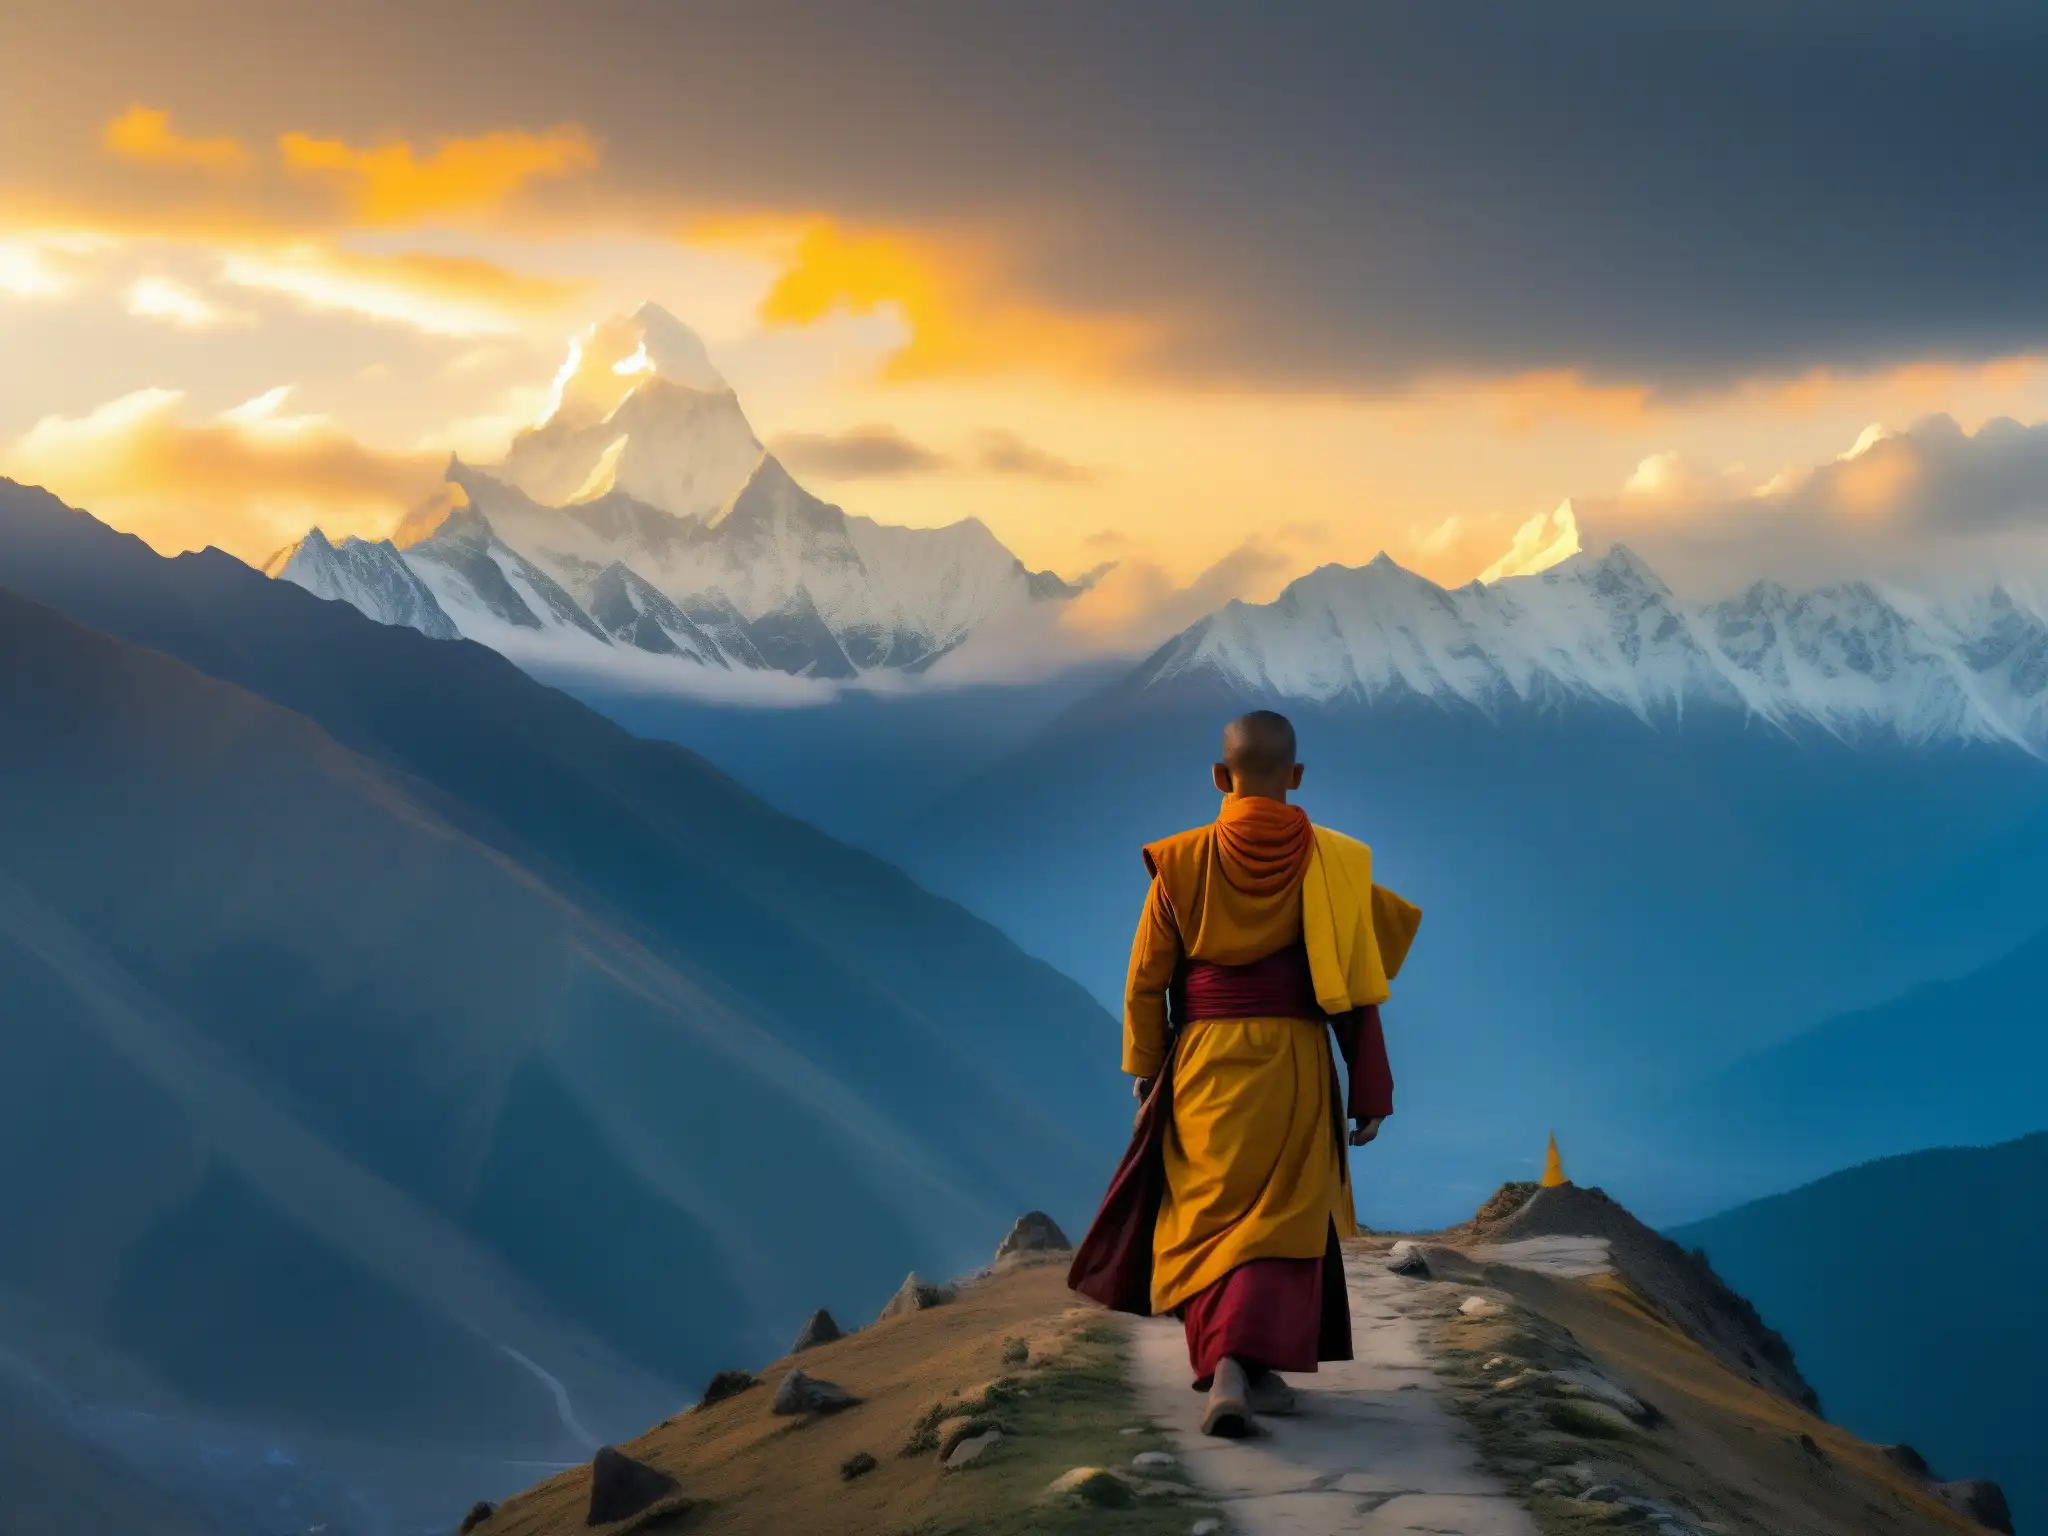 El espíritu del monje errante Bhután se eleva en la cima neblinosa, en contemplación serena mientras las banderas de oración ondean a su alrededor